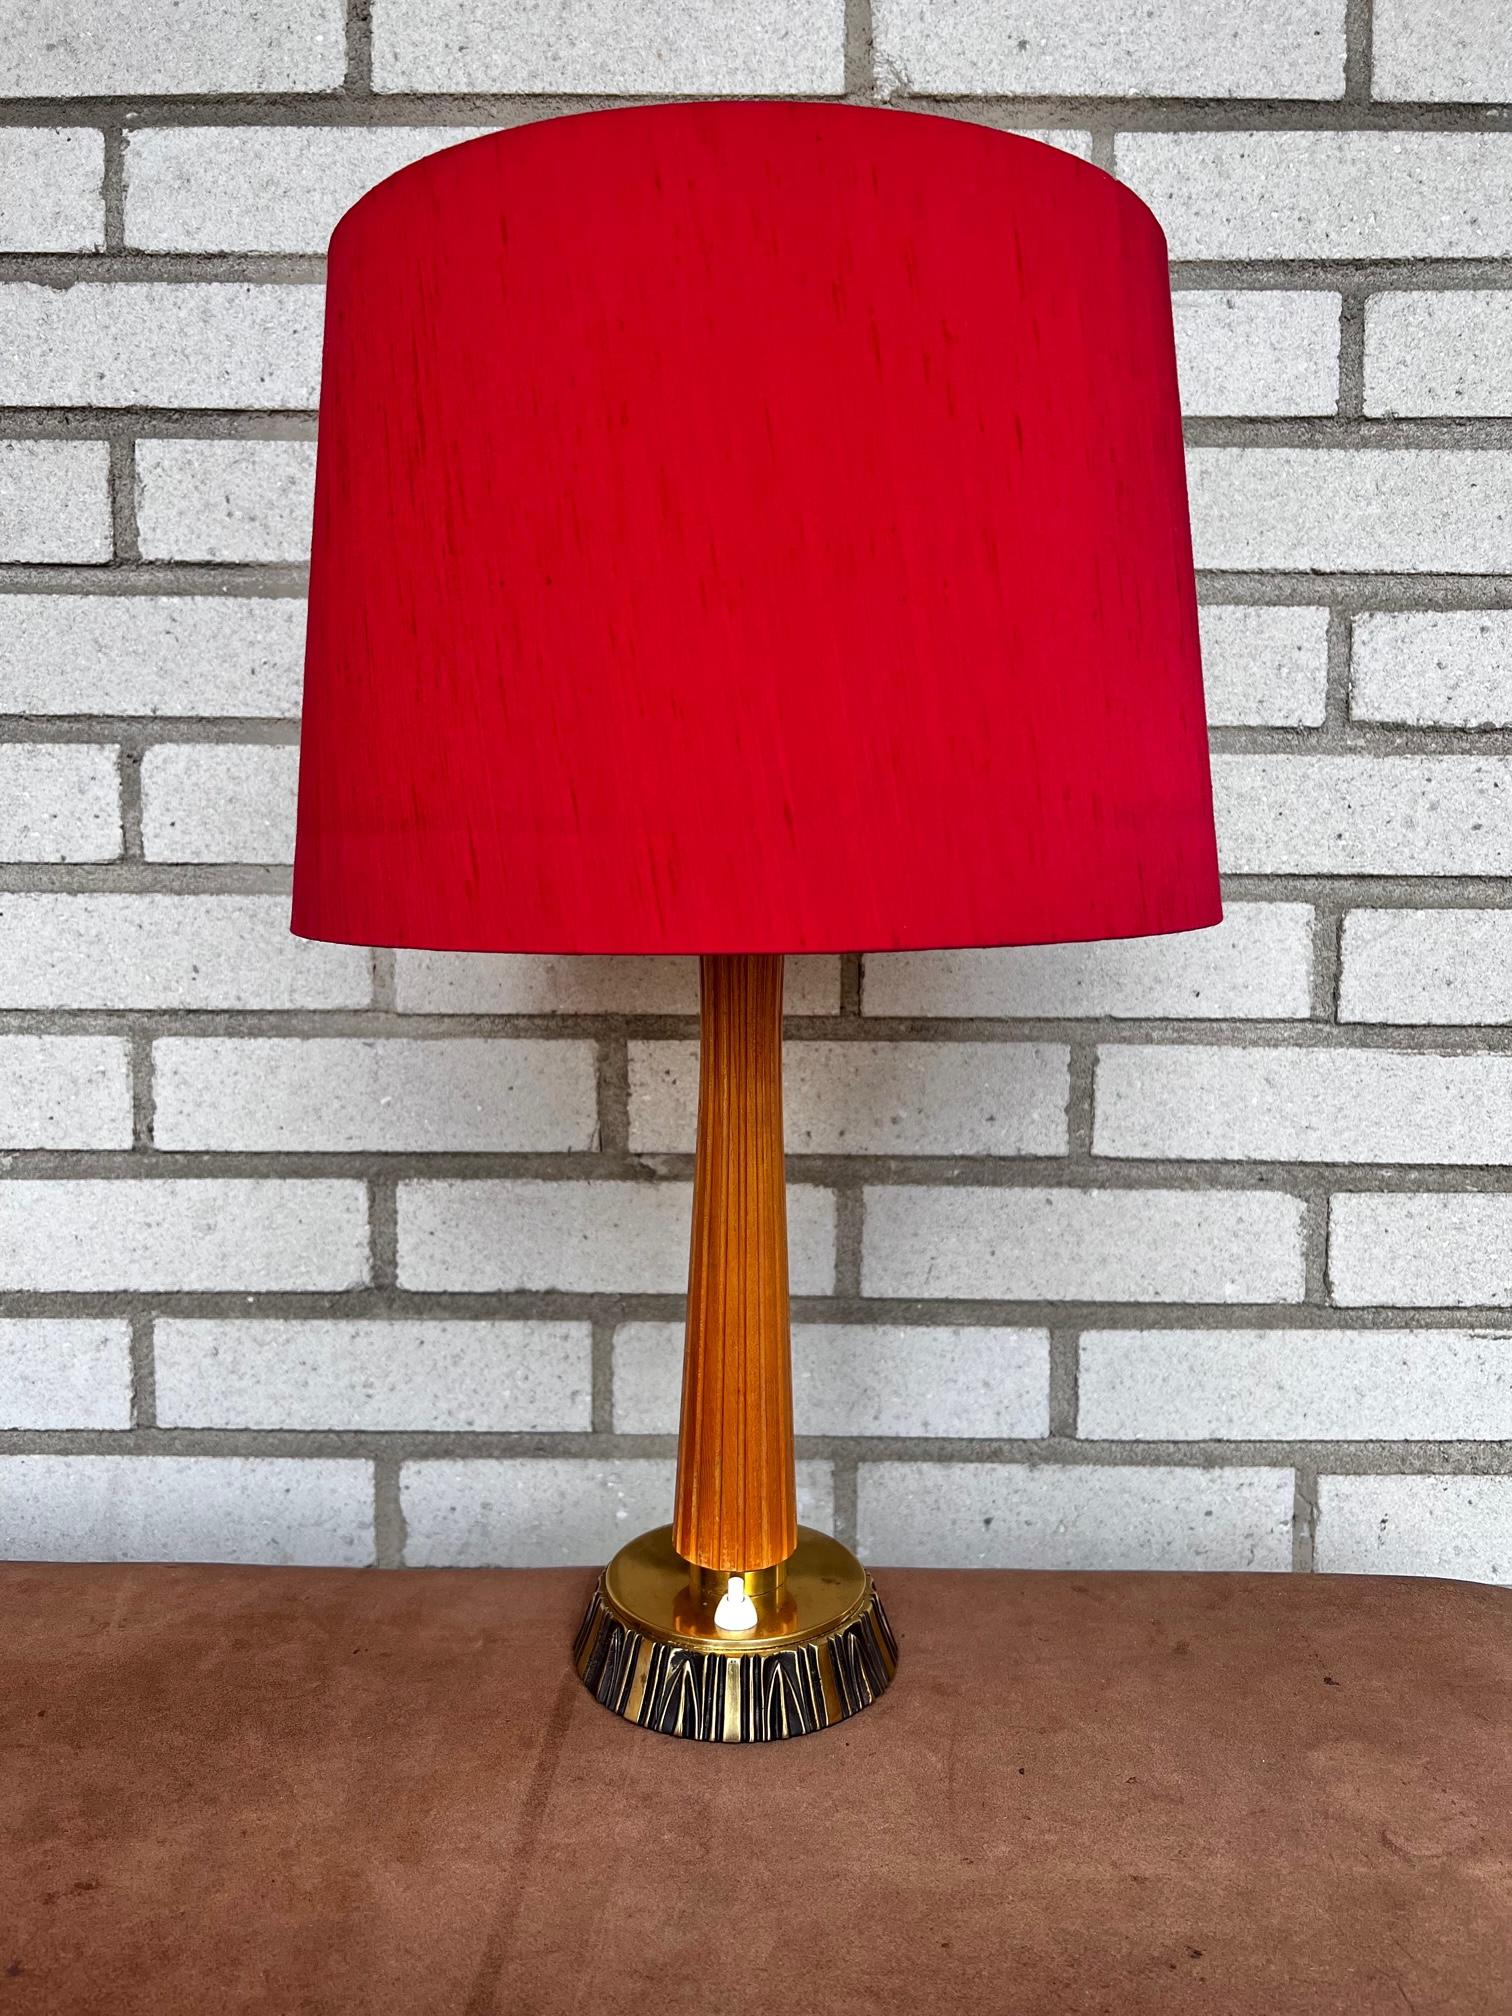 Lampe de table conçue par la sculptrice suédoise Sonja Katzin, (1919-2014). Produit par ASEA en Suède dans les années 1950. La lampe a reçu le numéro E1141 et un tampon ASEA sous la base. 

La hauteur de la lampe jusqu'à la douille est de 38 cm et